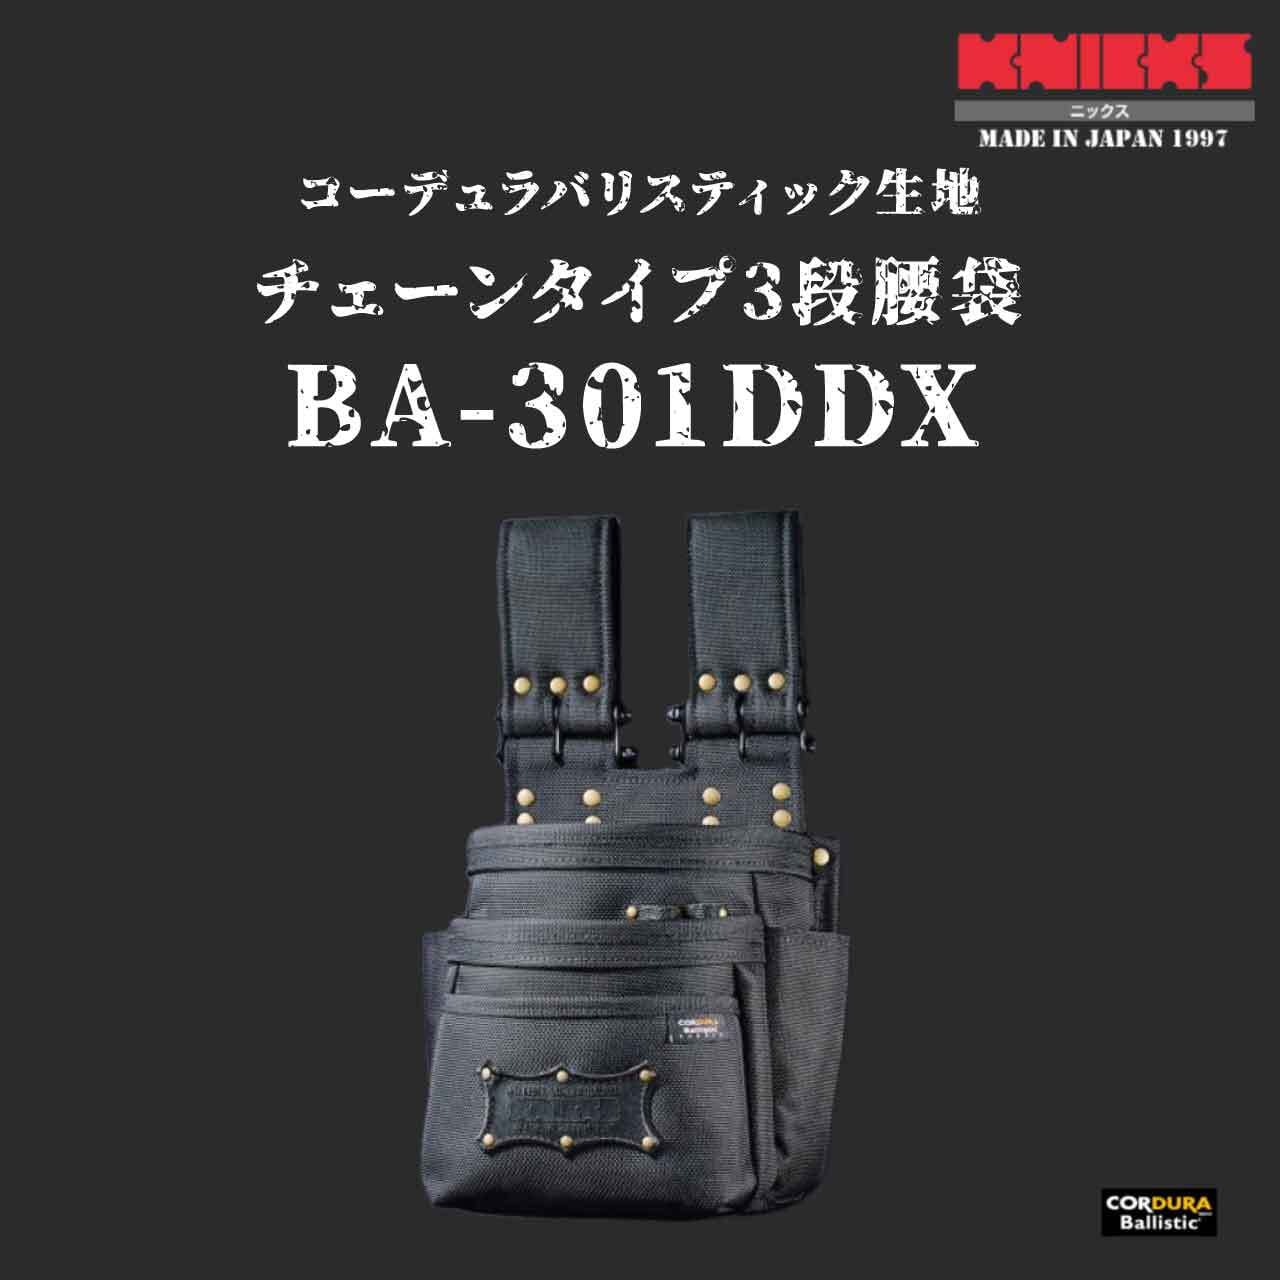 ニックス コーデュラバリスティック生地チェーンタイプ3段腰袋 新発売の 15810円 